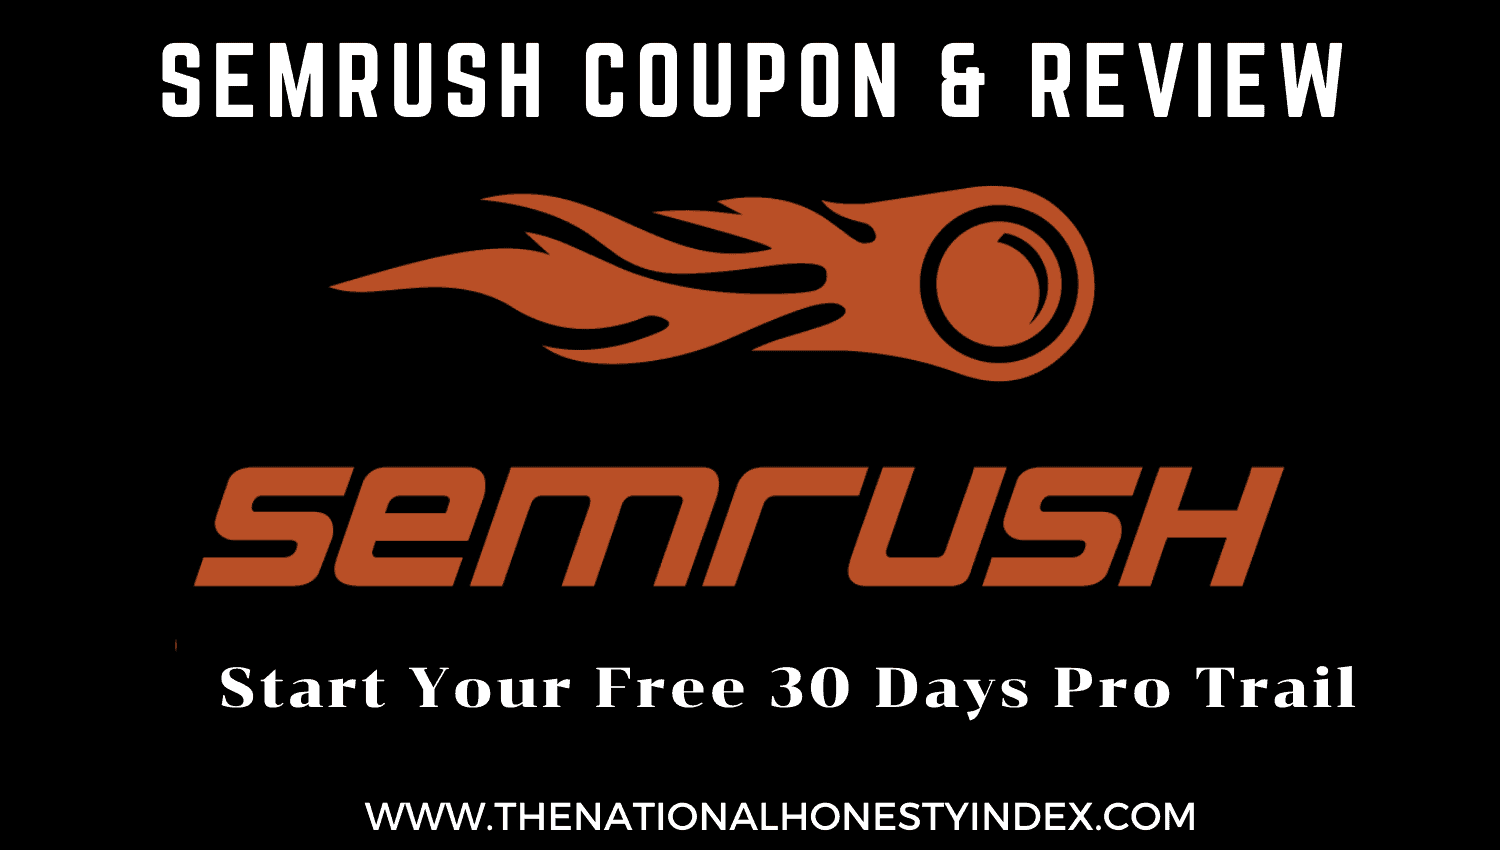 SEMrush Coupon Code & Review 